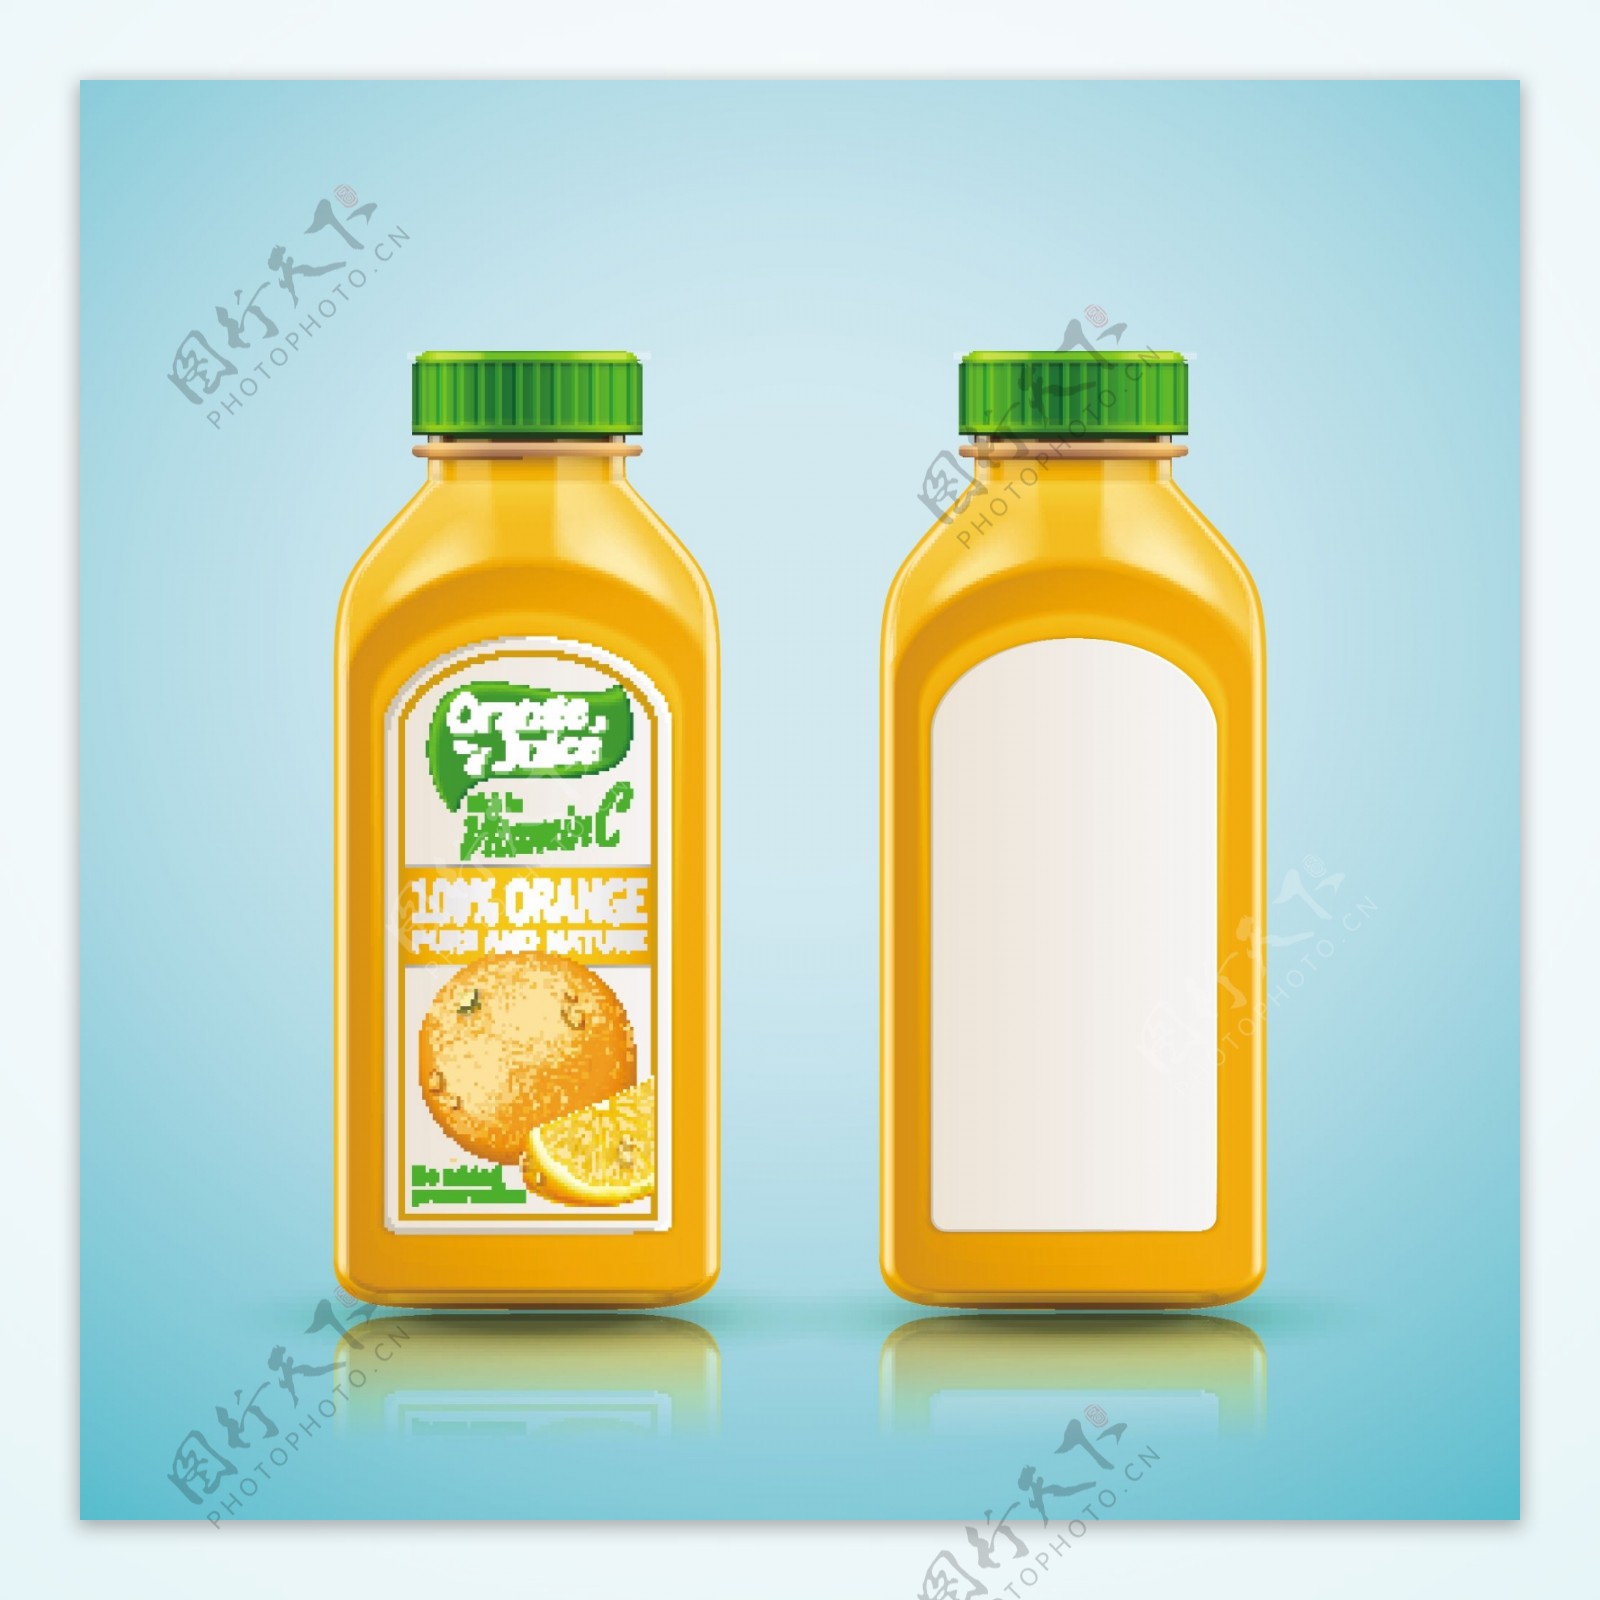 橘子果汁矢量素材下载